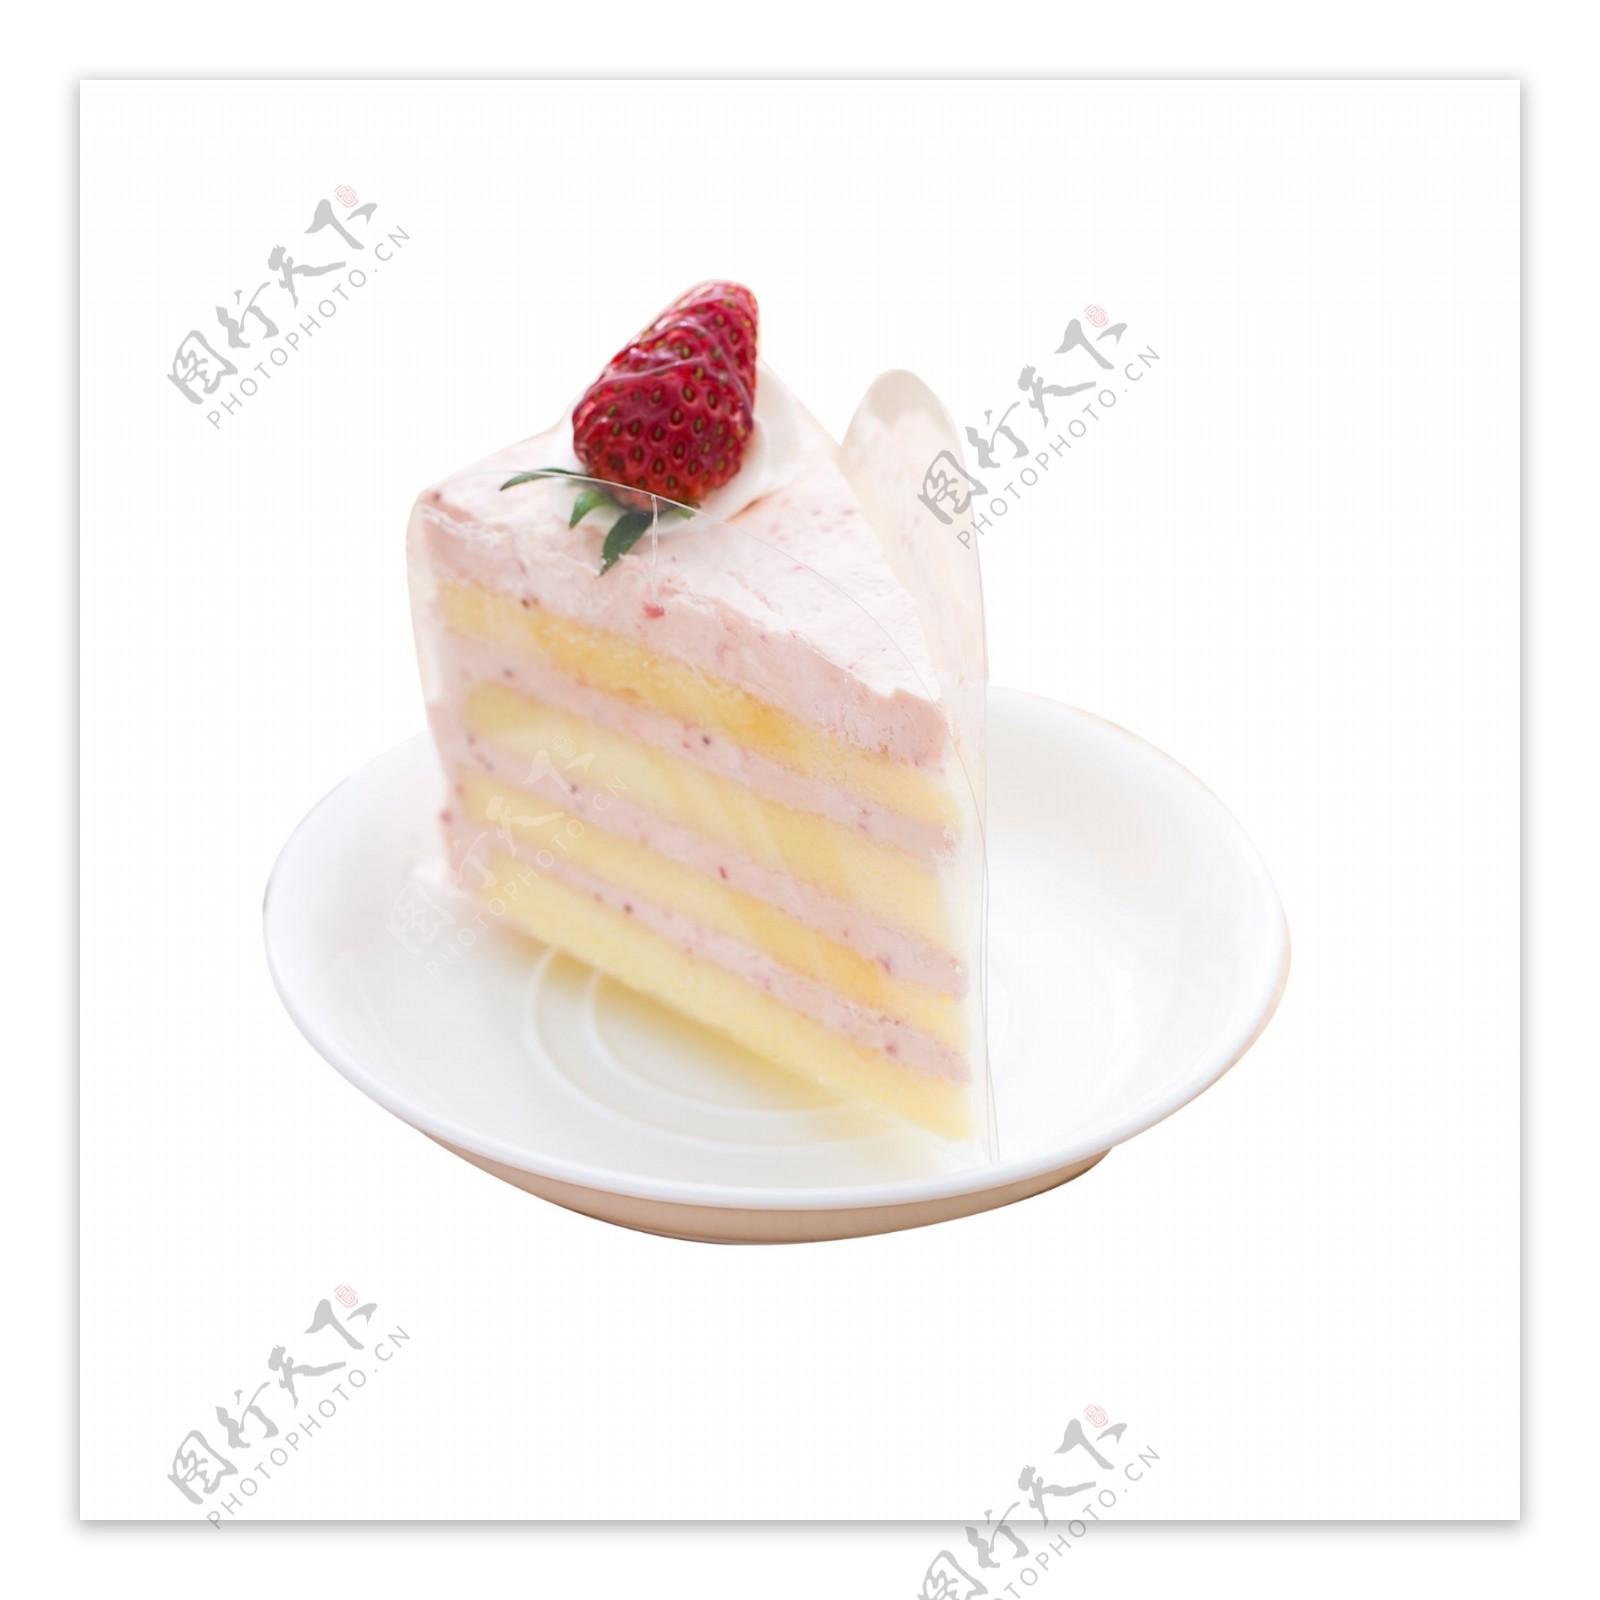 白色三角形蛋糕食物元素